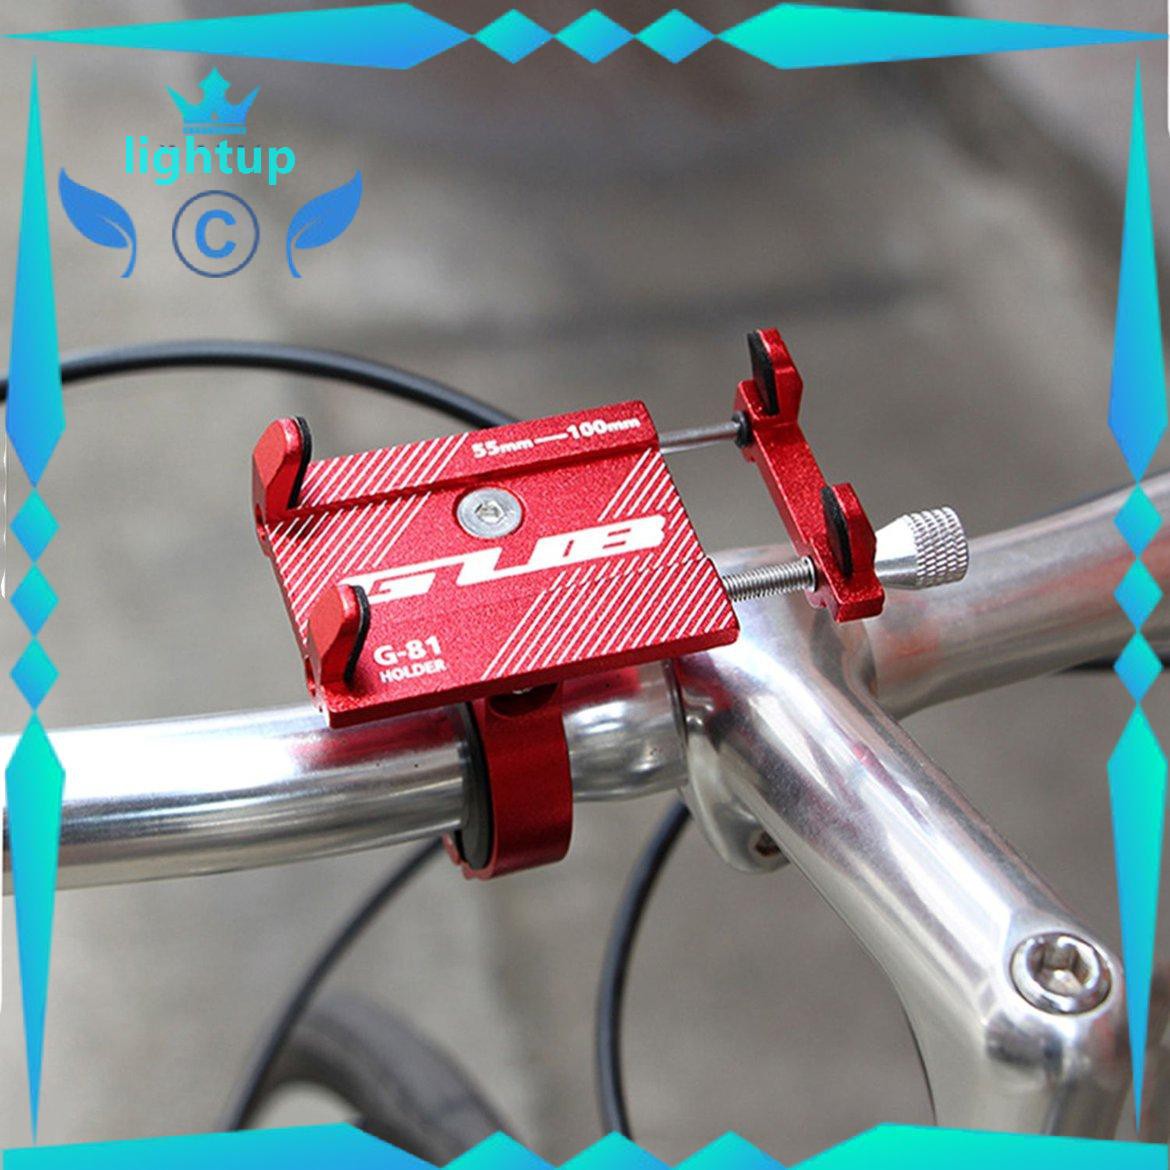 Giá đỡ điện thoại di động cho xe đạp / xe máy bằng nhôm GUB